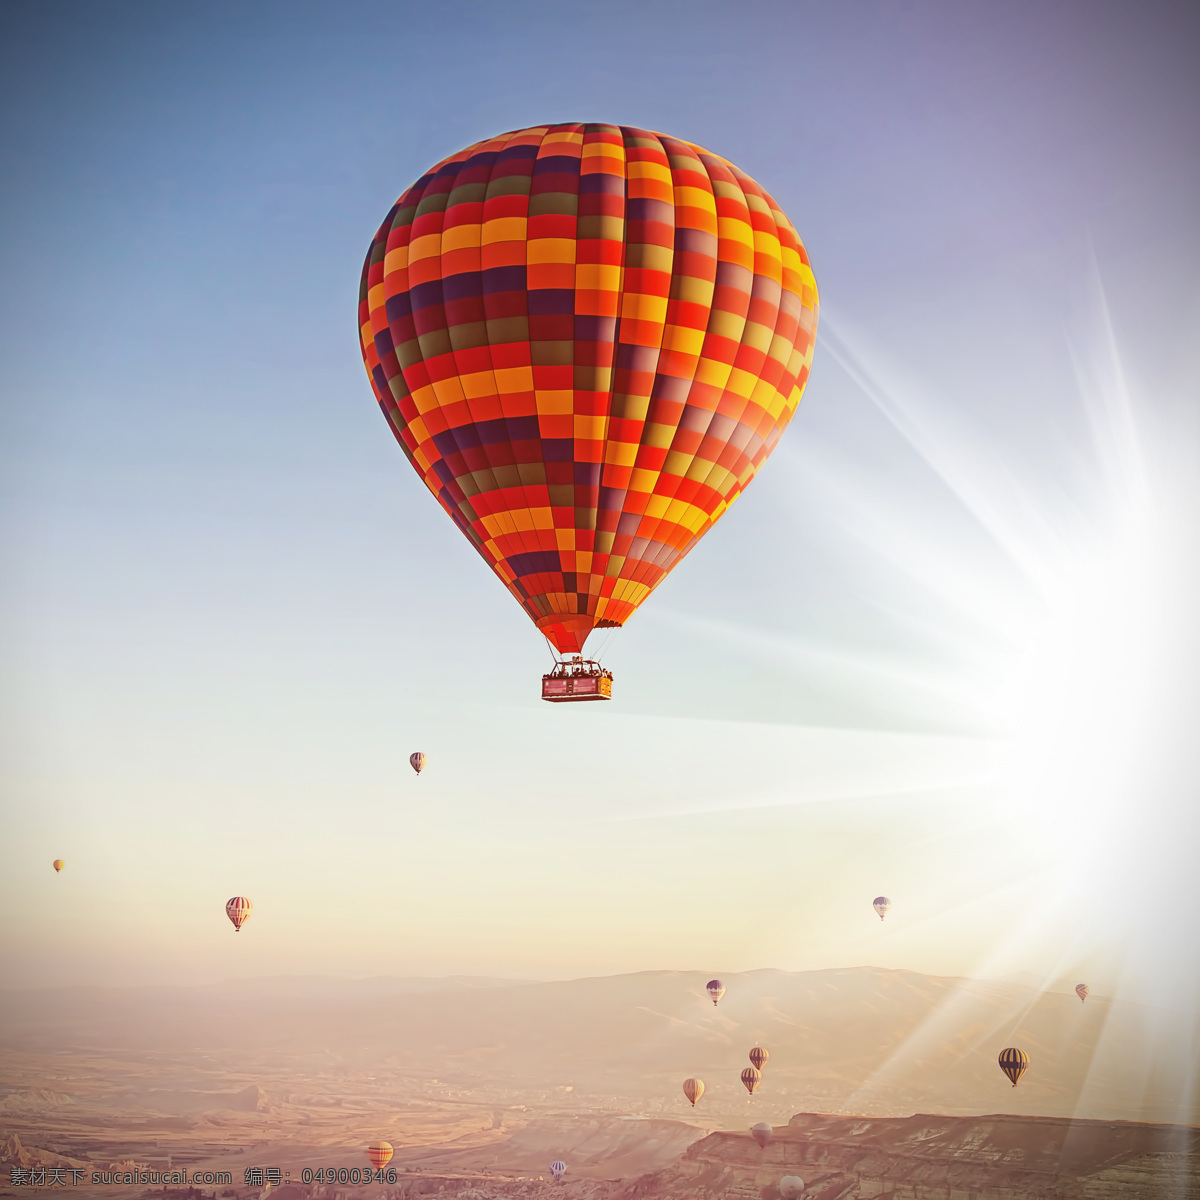 美丽 热气球 风景 空中的热气球 热气球摄影 美丽风景 其他类别 生活百科